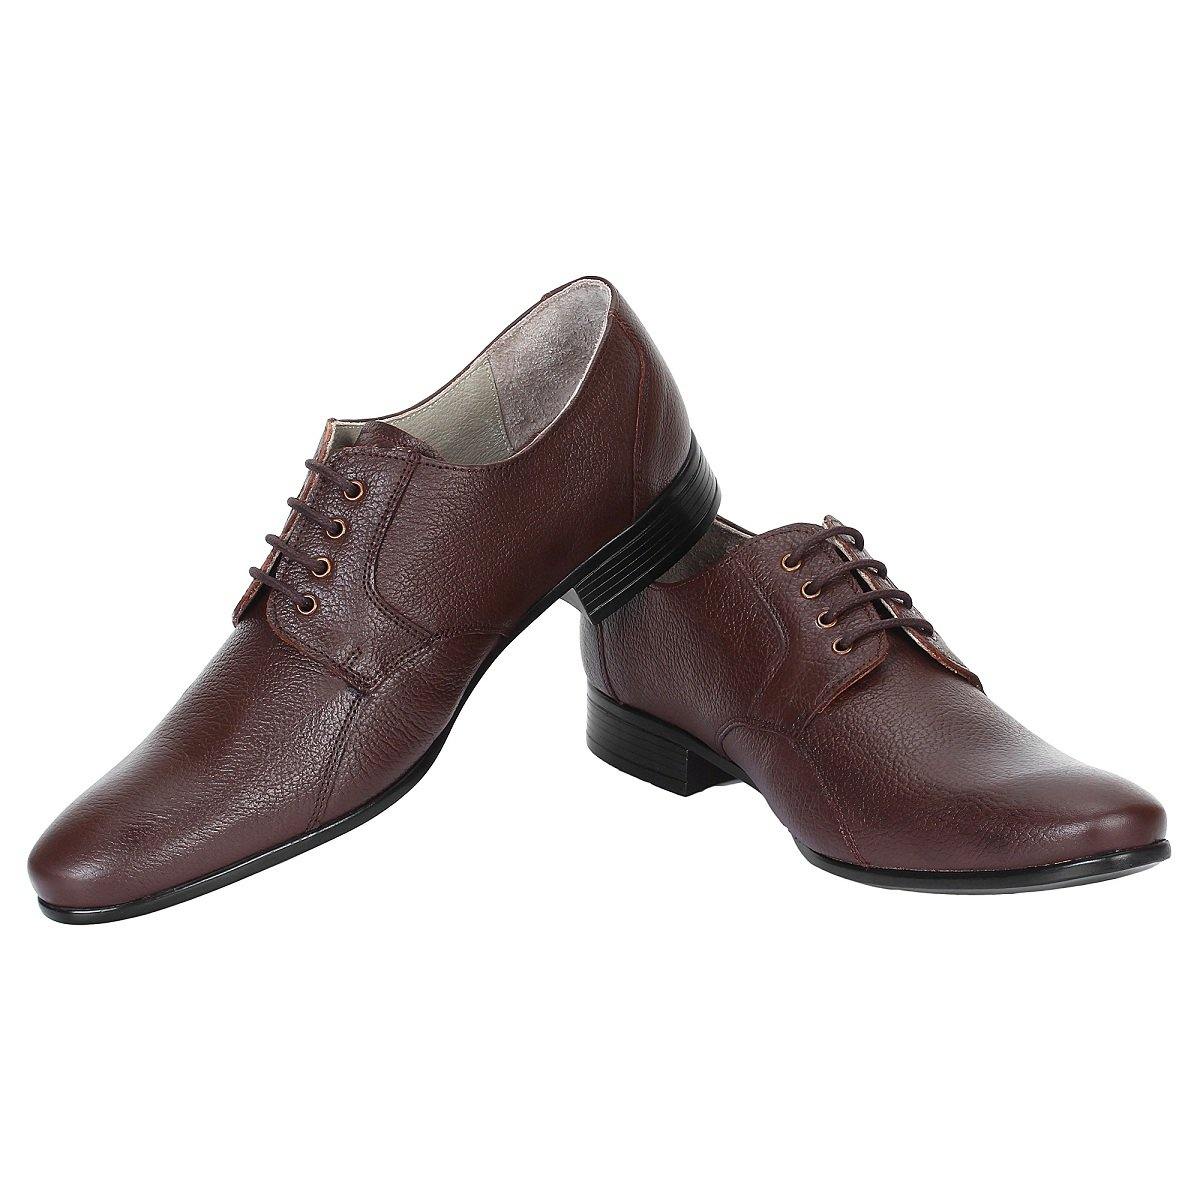 SeeandWear Stylish Shoes for Men - SeeandWear